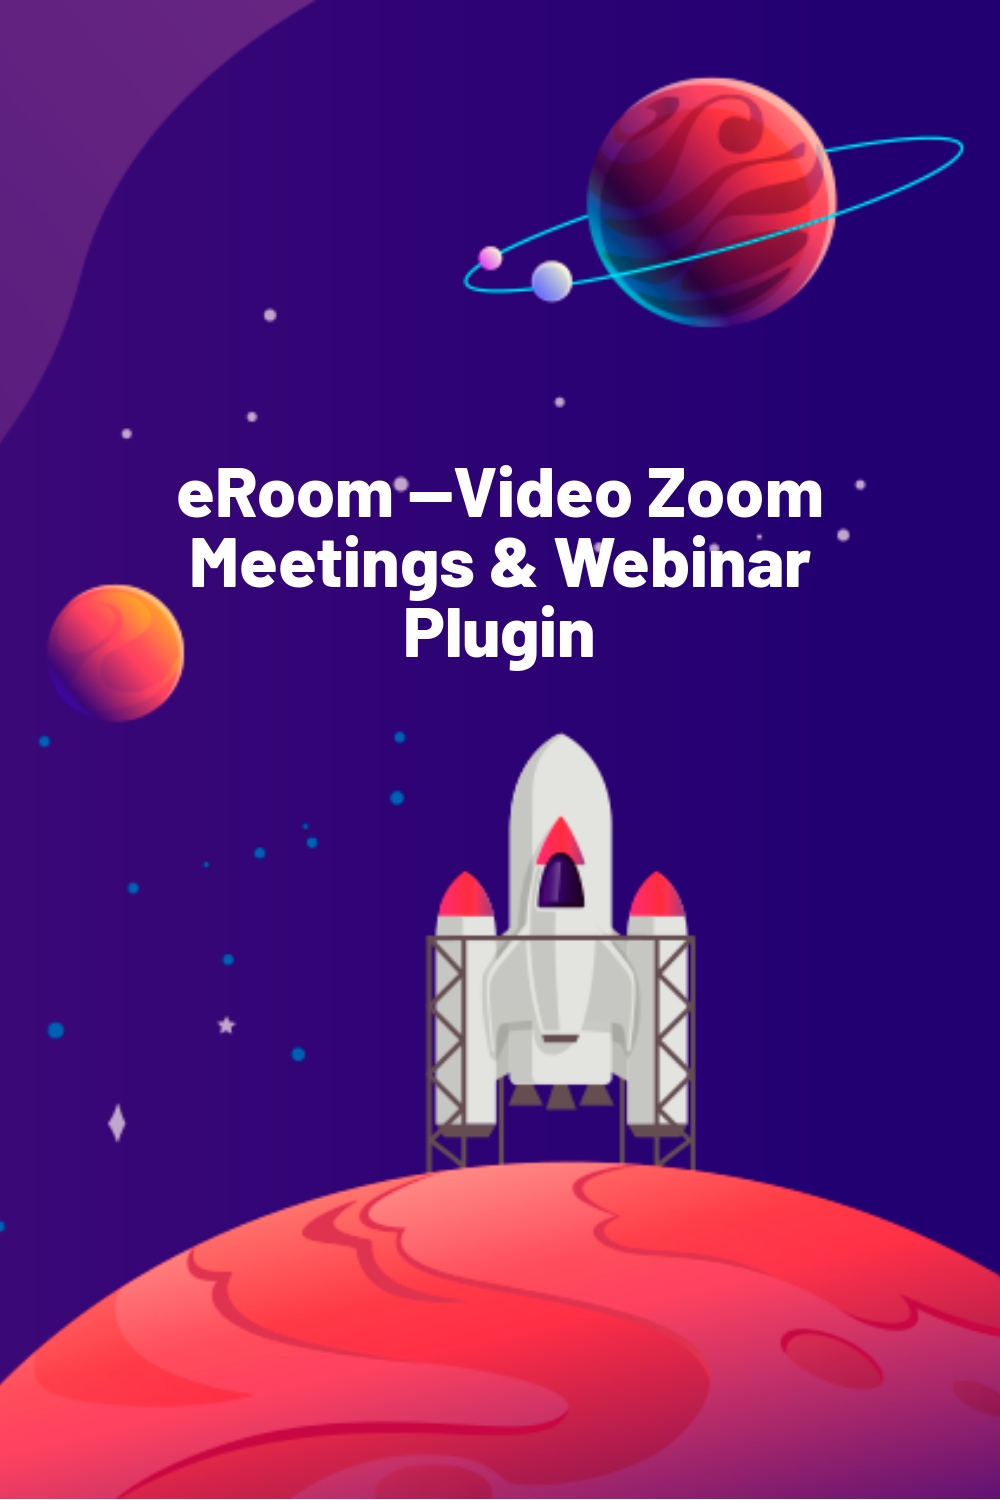 eRoom —Video Zoom Meetings & Webinar Plugin